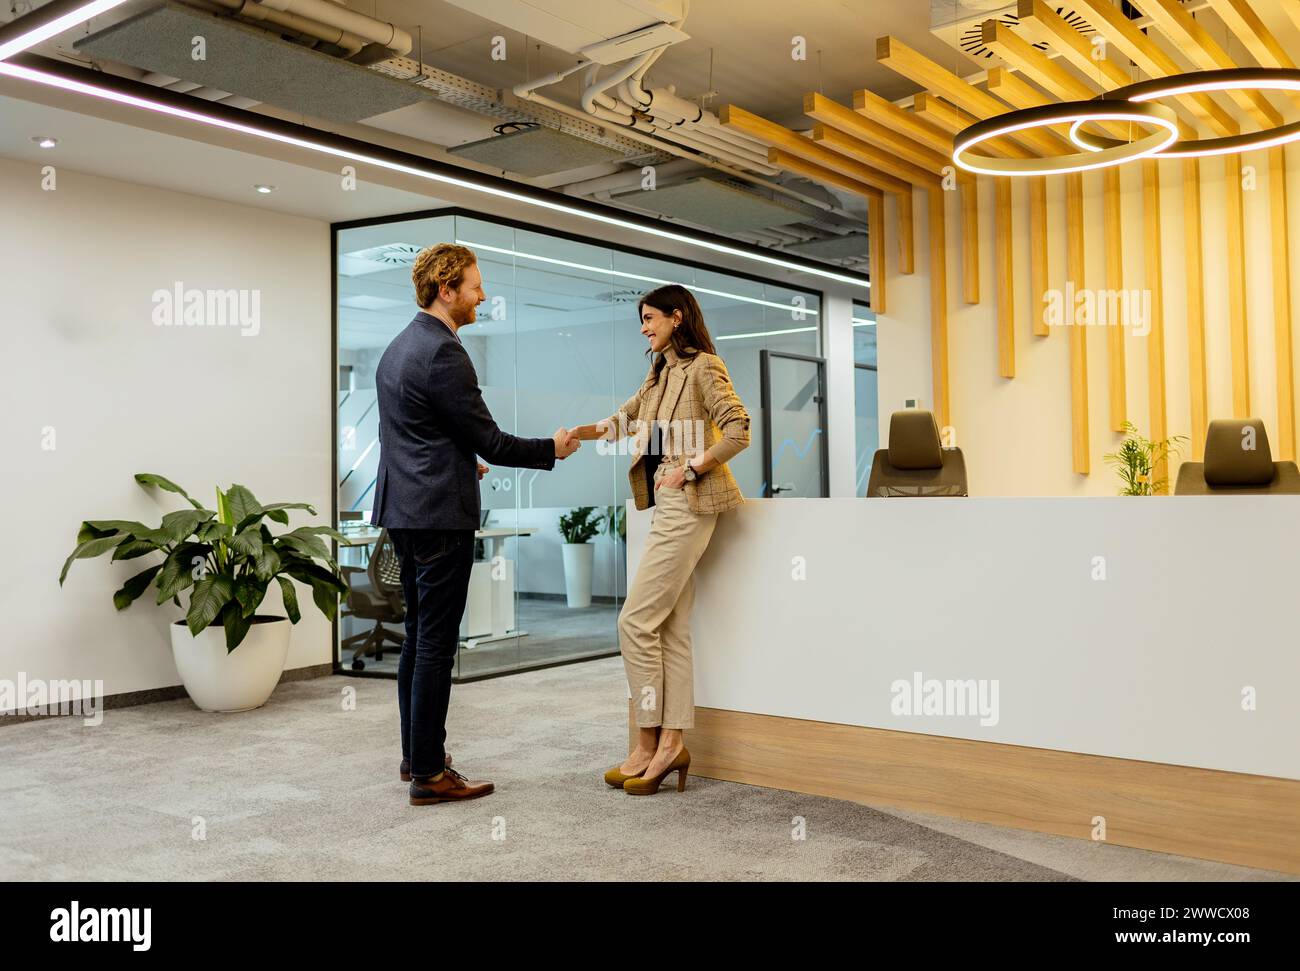 Deux professionnels échangeant des salutations avec une poignée de main amicale dans un environnement de bureau élégant Banque D'Images